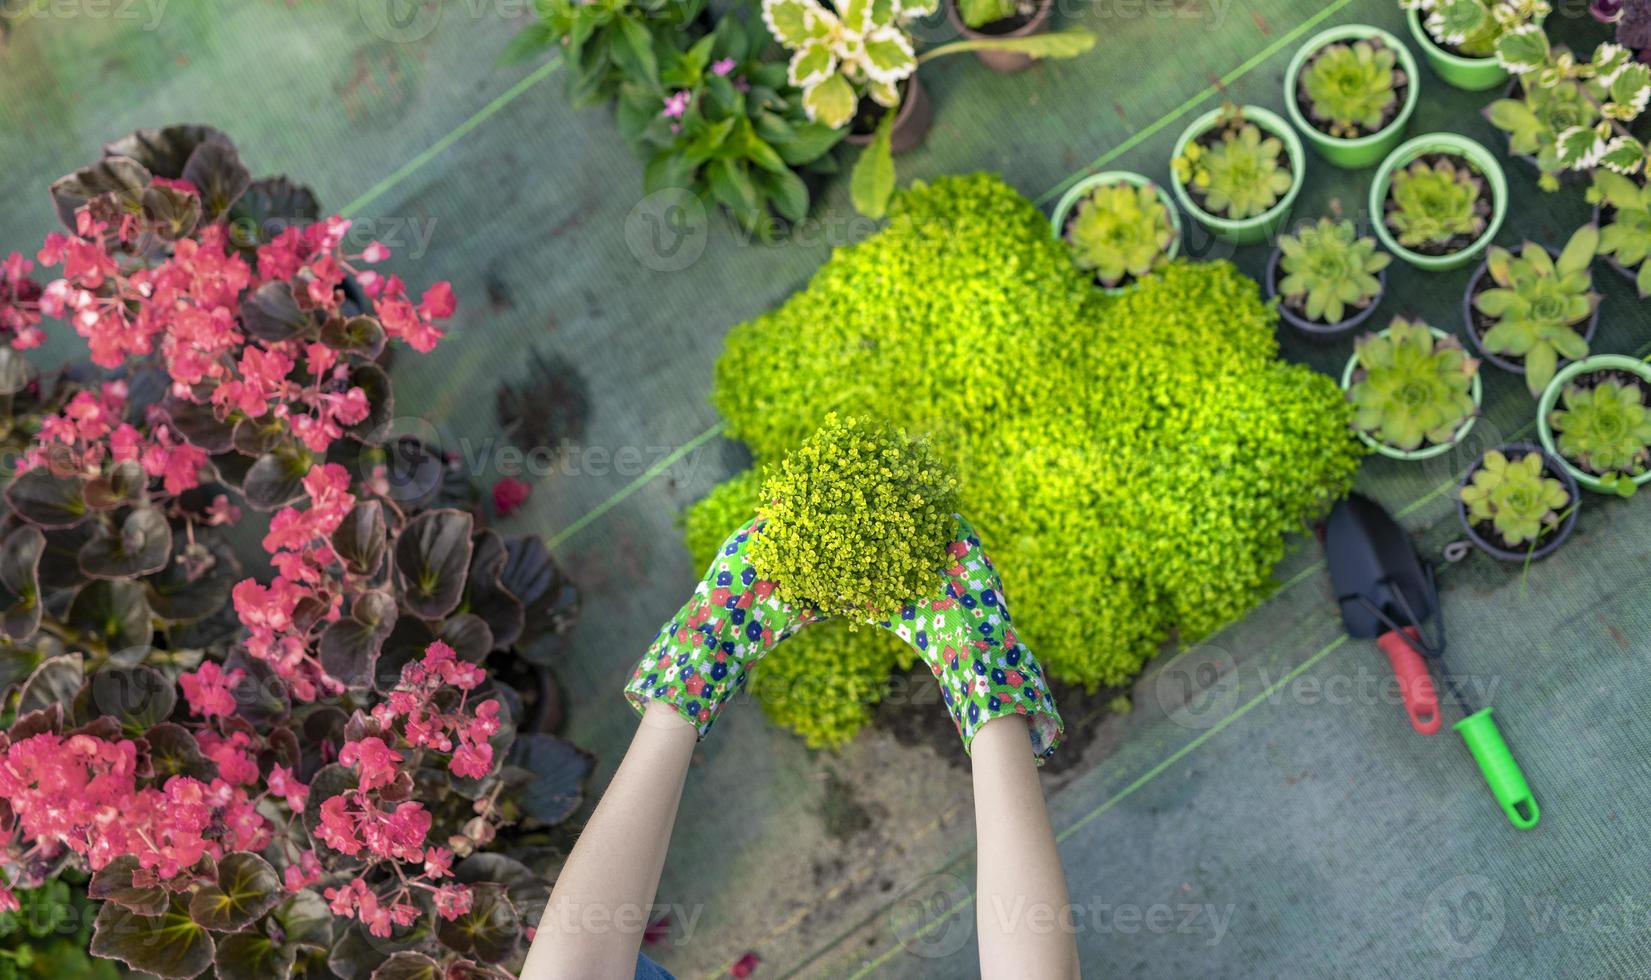 jovem em um viveiro segurando uma planta com flores nas mãos enquanto ela se ajoelha na passarela entre as plantas. foto